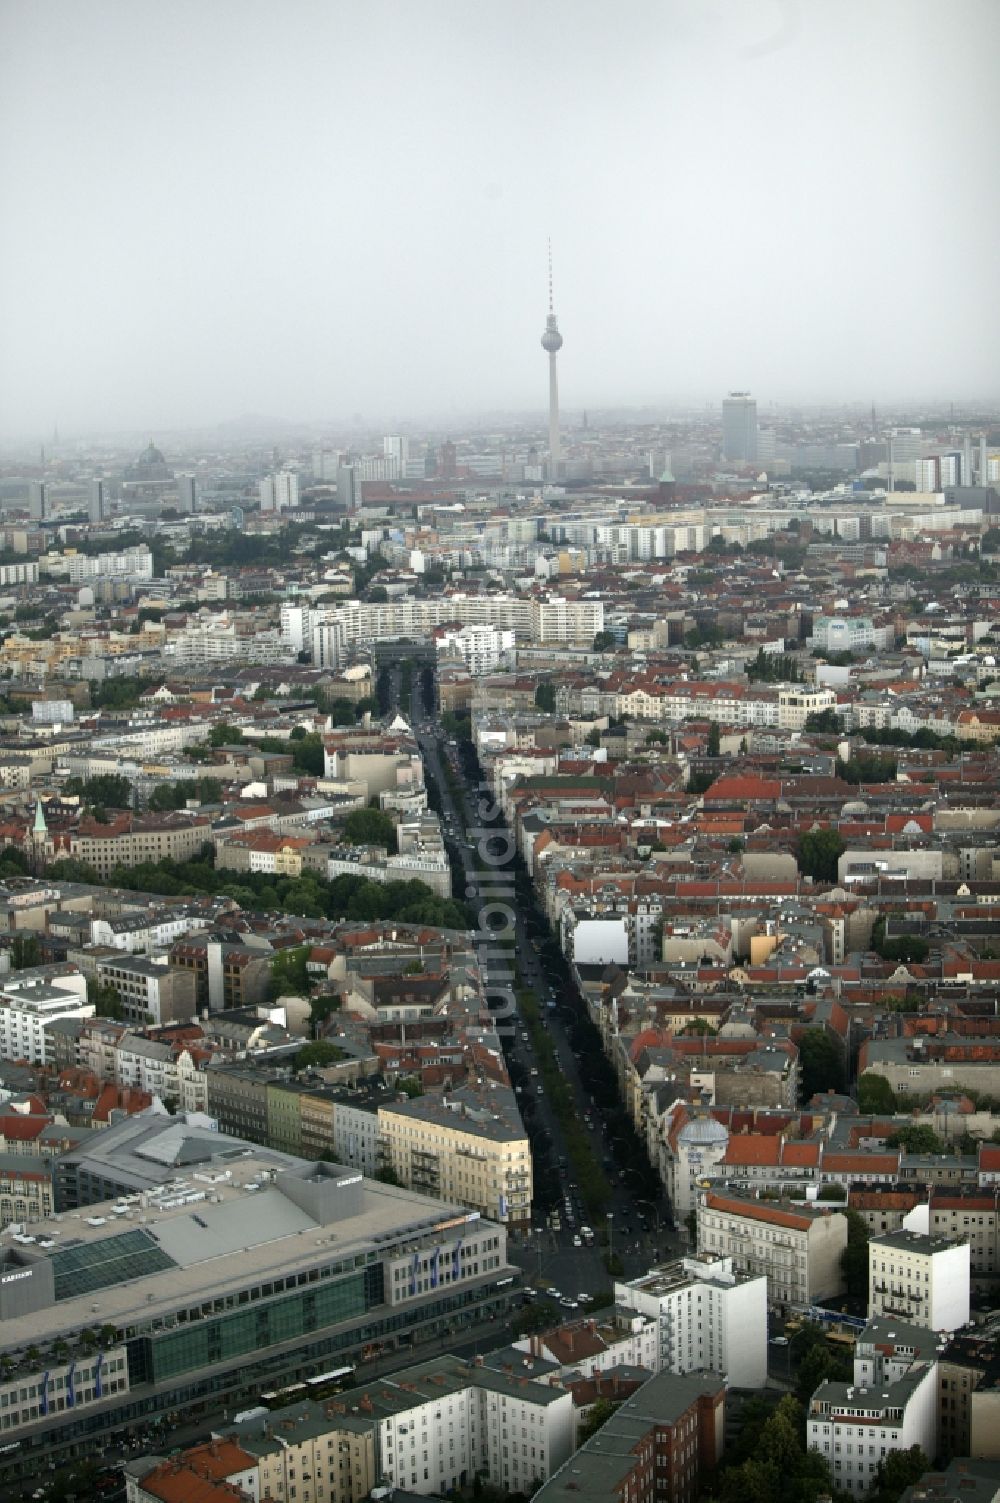 Luftbild Berlin - Kottbusser Damm im Stadtteil Kreuzberg von Berlin